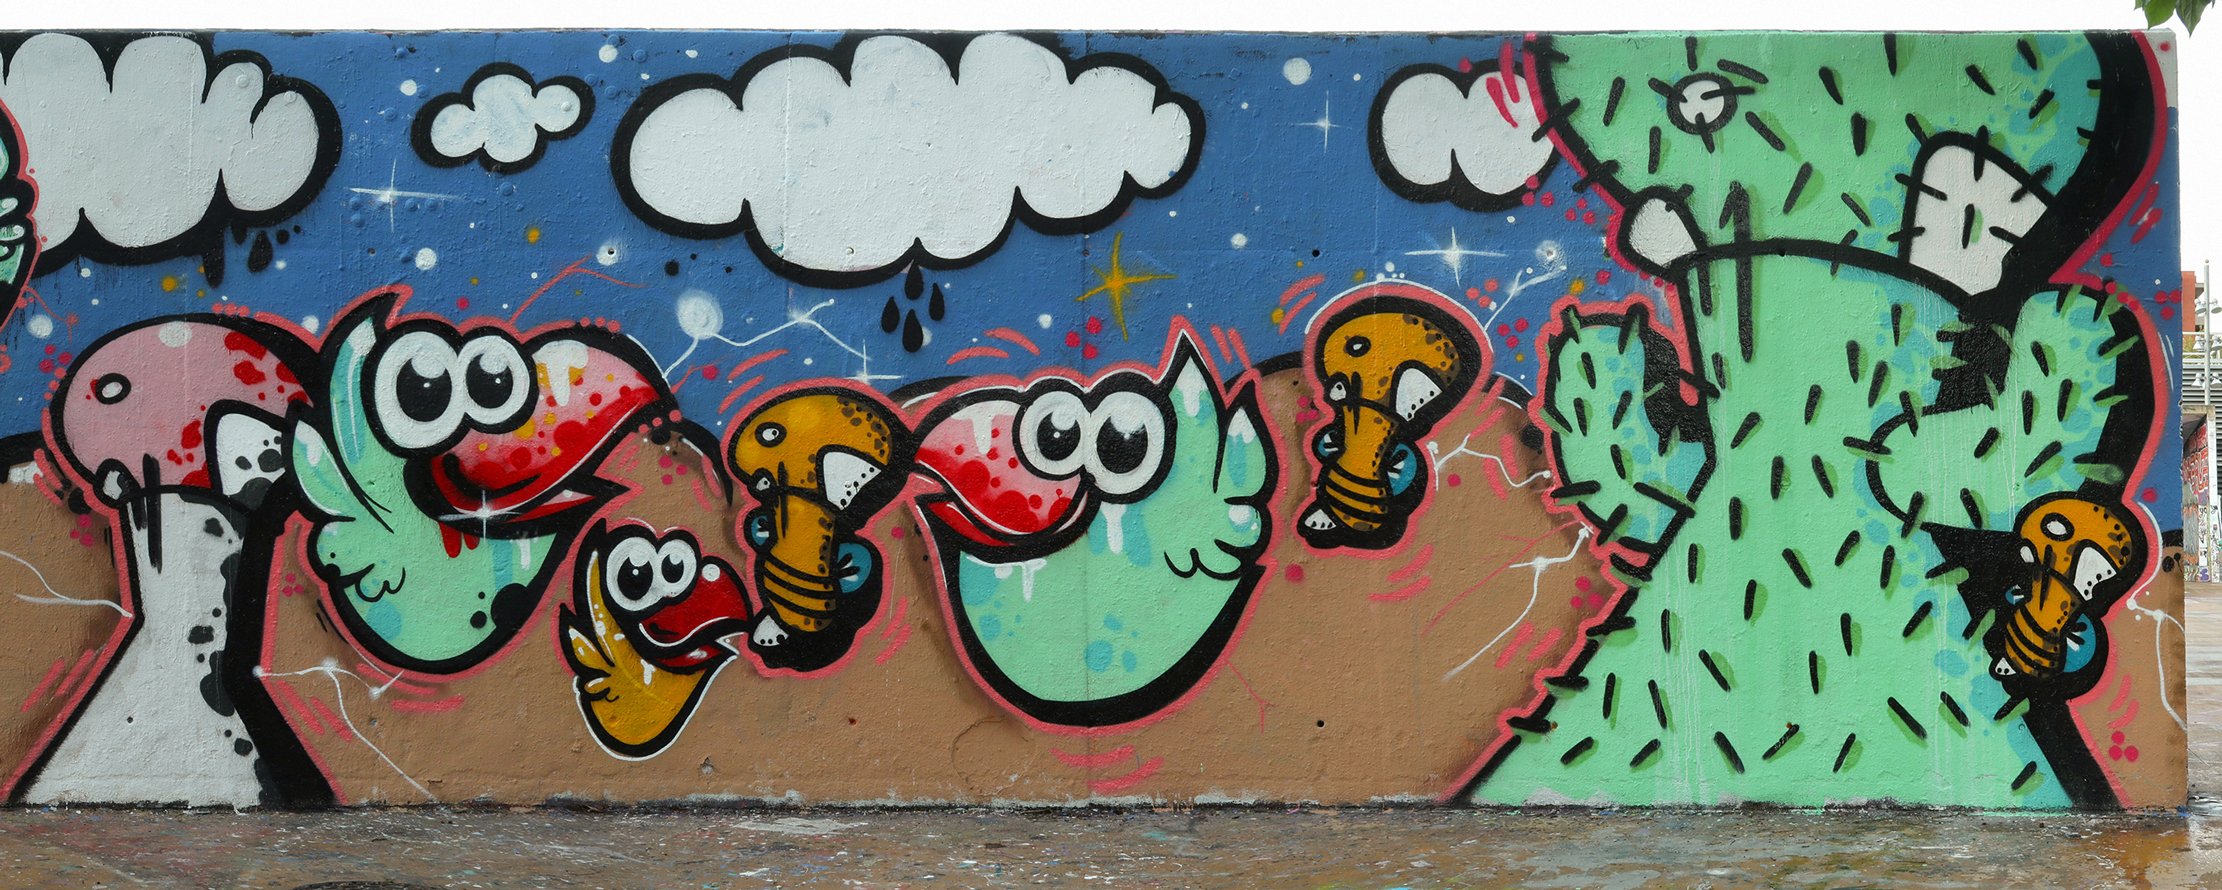 arte urbano seta pájaro Barcelona